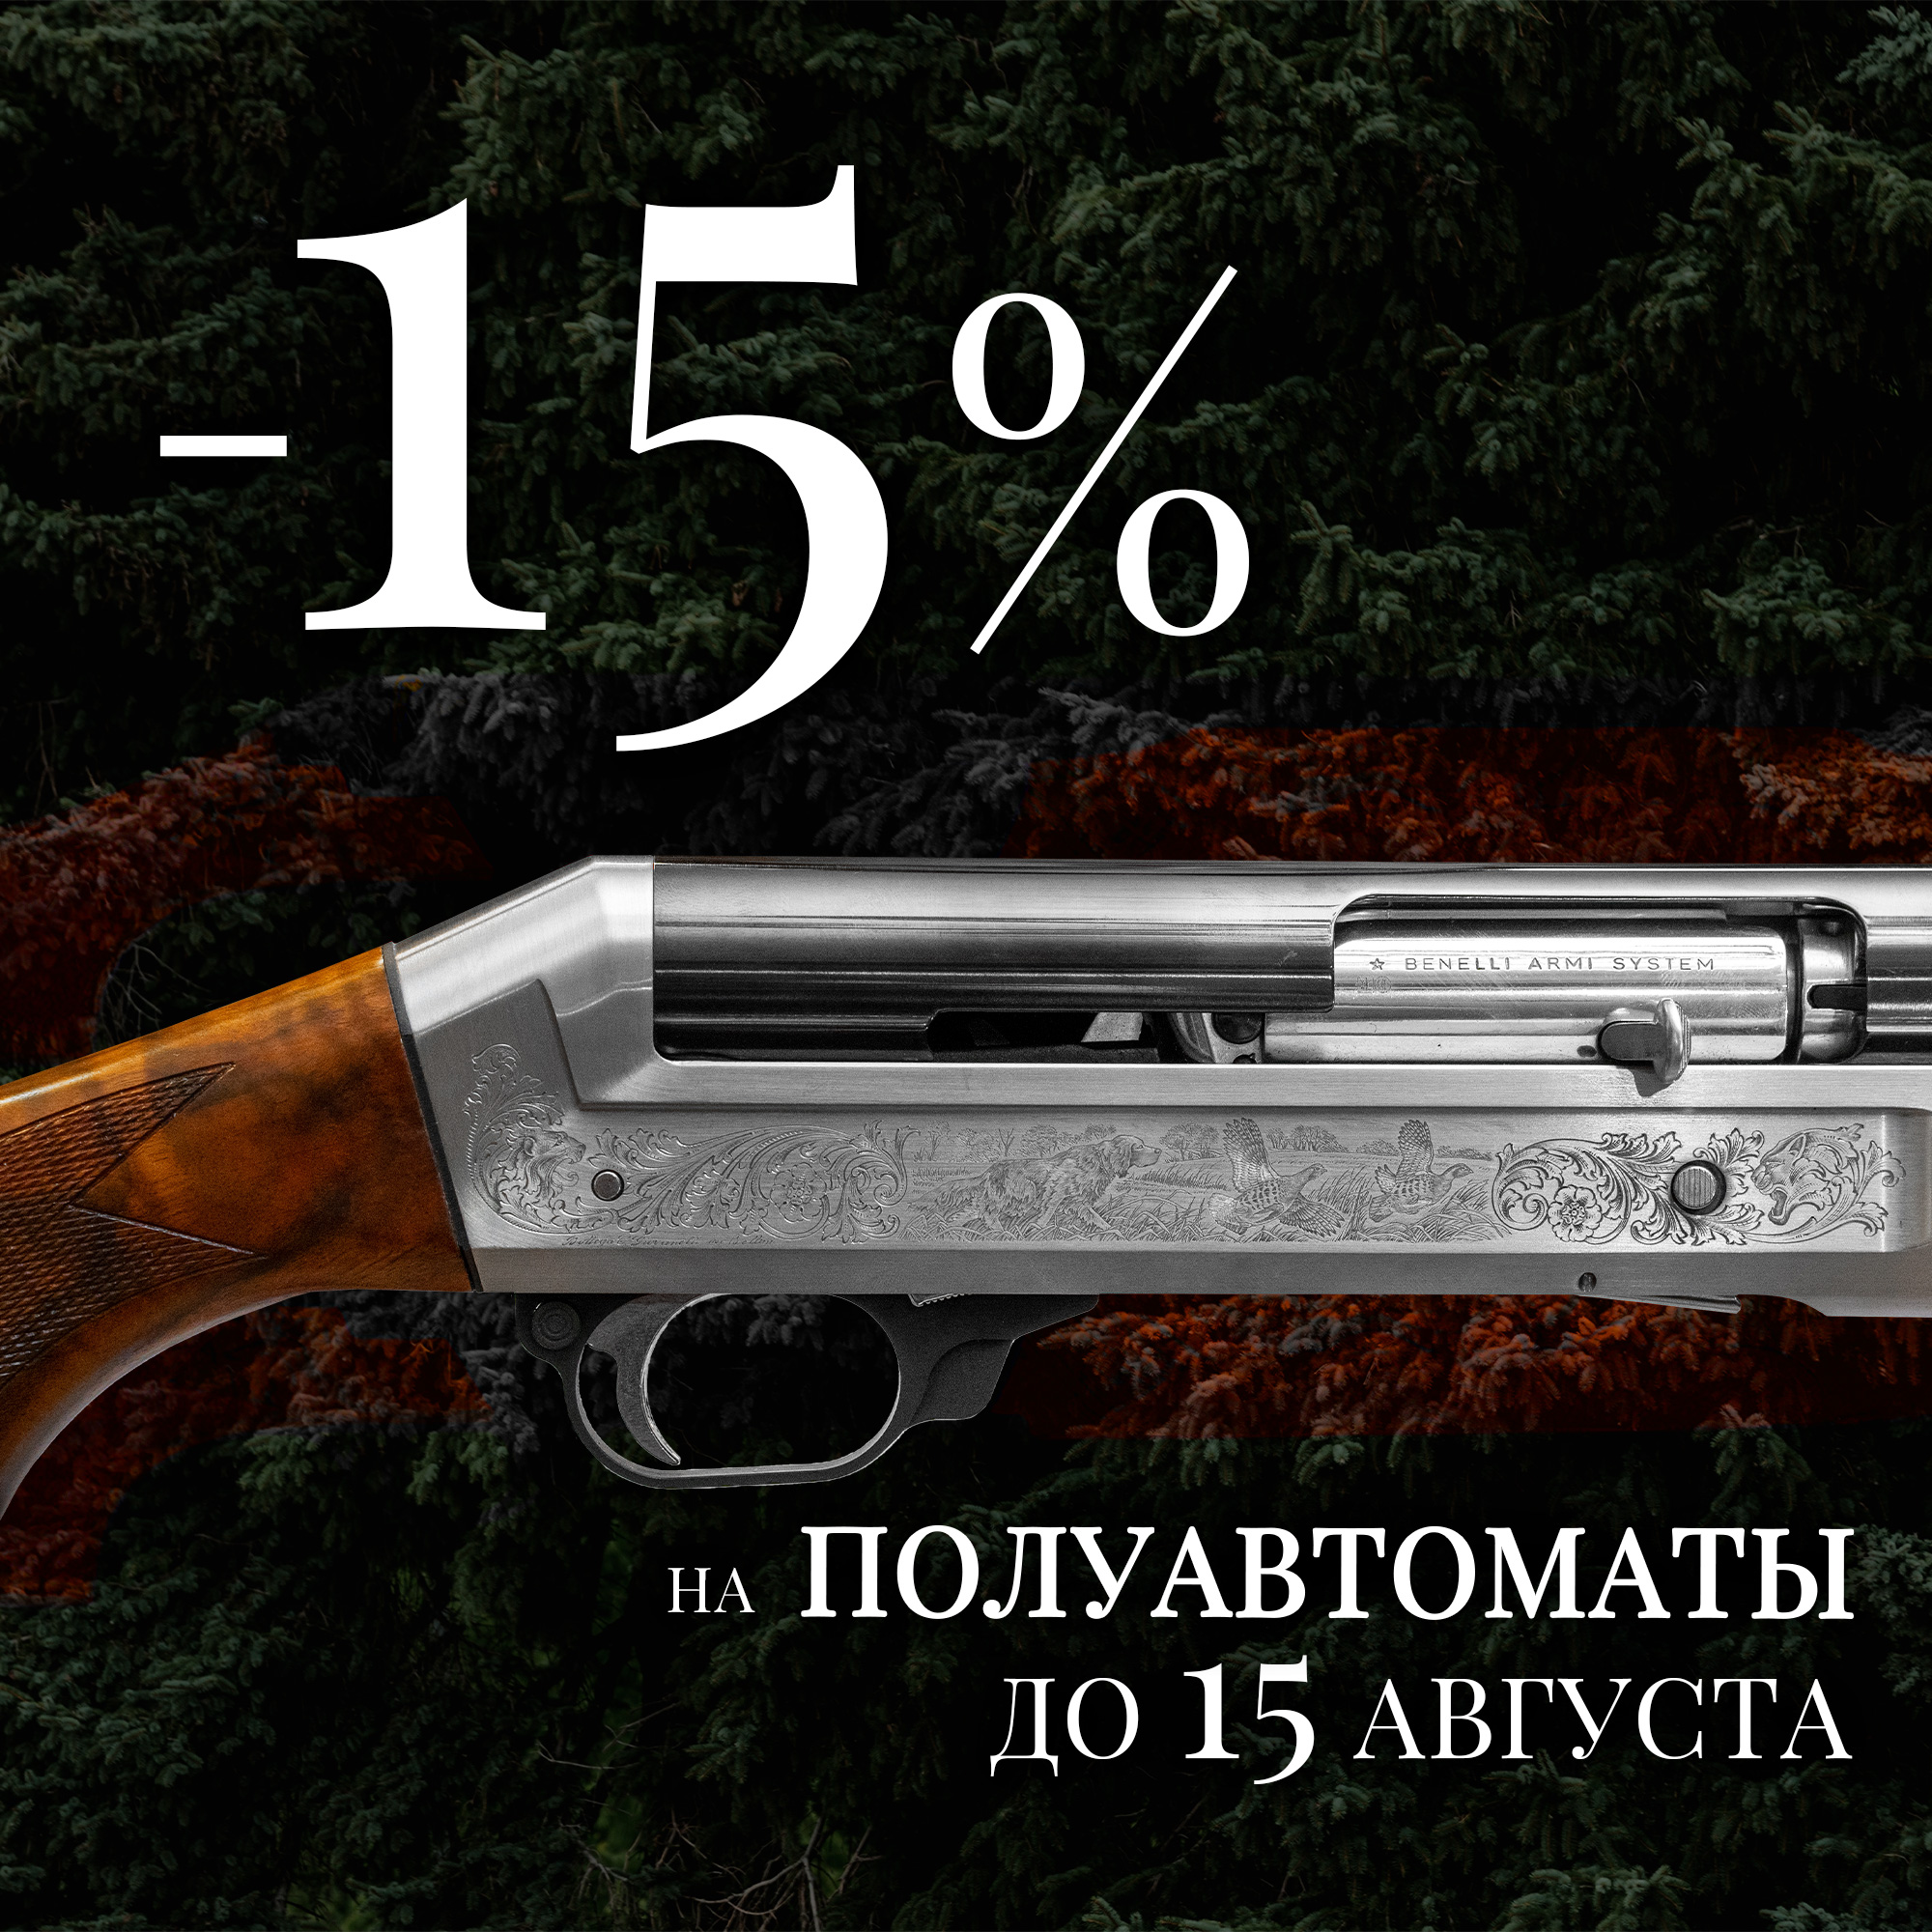 Полуавтоматичиский БУМ, скидки на все полуавтоматические ружья до 15%!